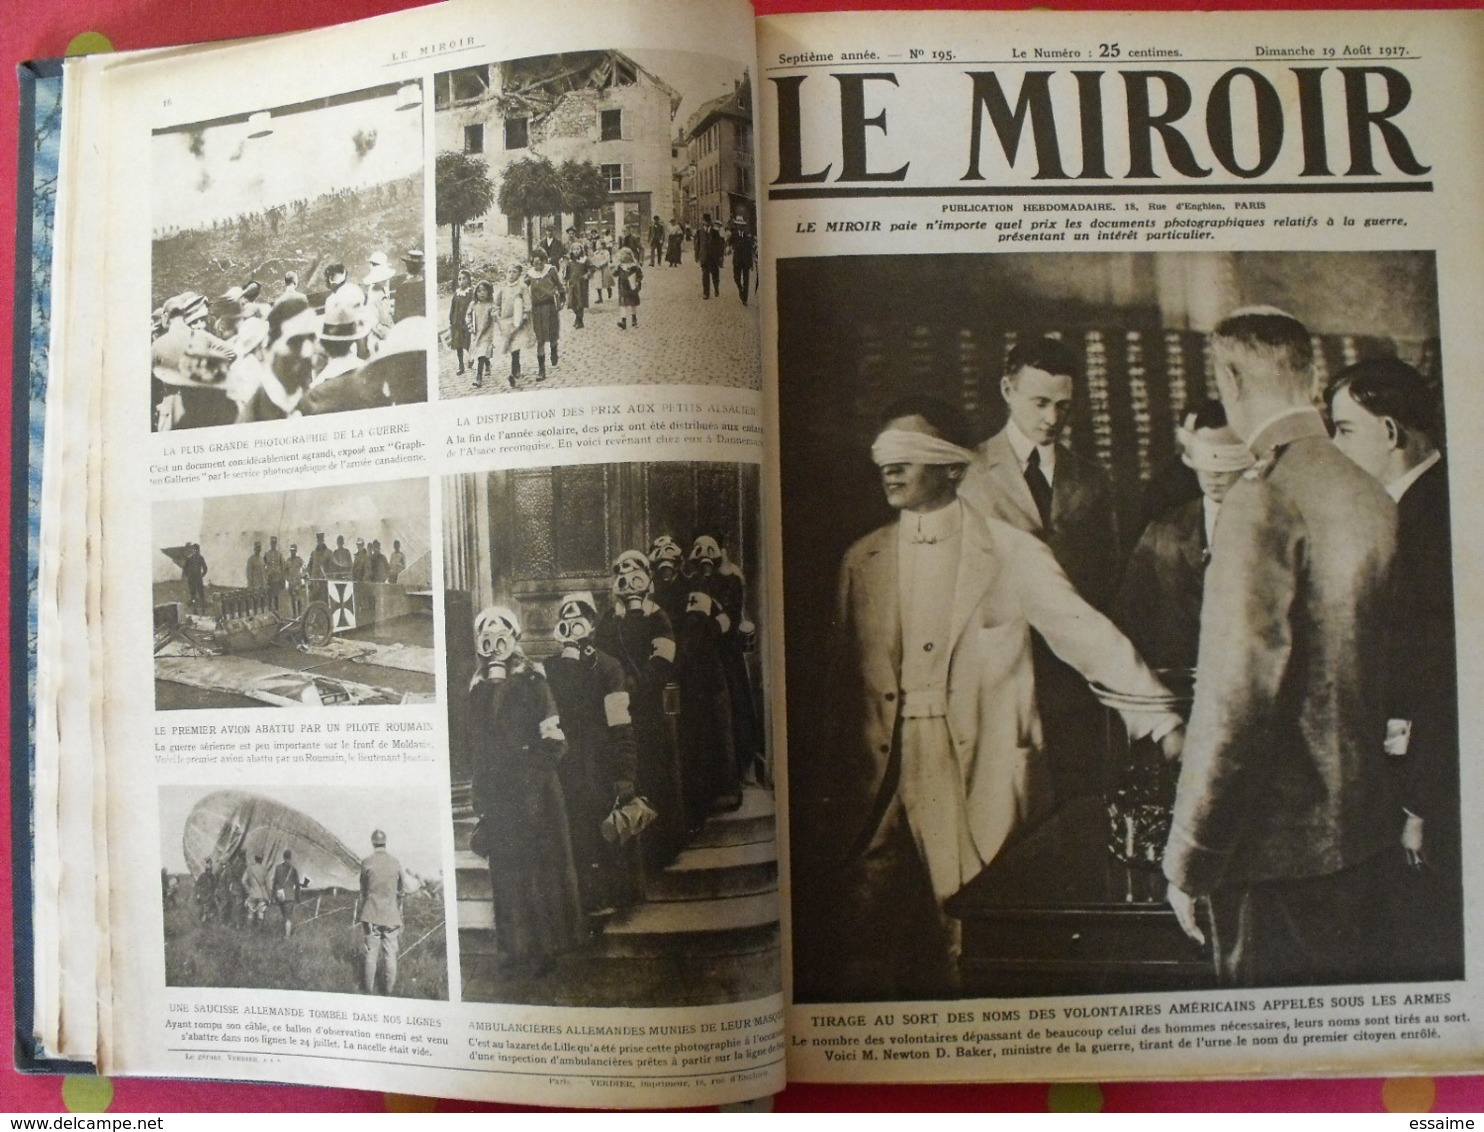 Le miroir. 2ème semestre 1917. 22 numéros. la guerre 14-18 très illustrée. recueil, reliure. révolution russe